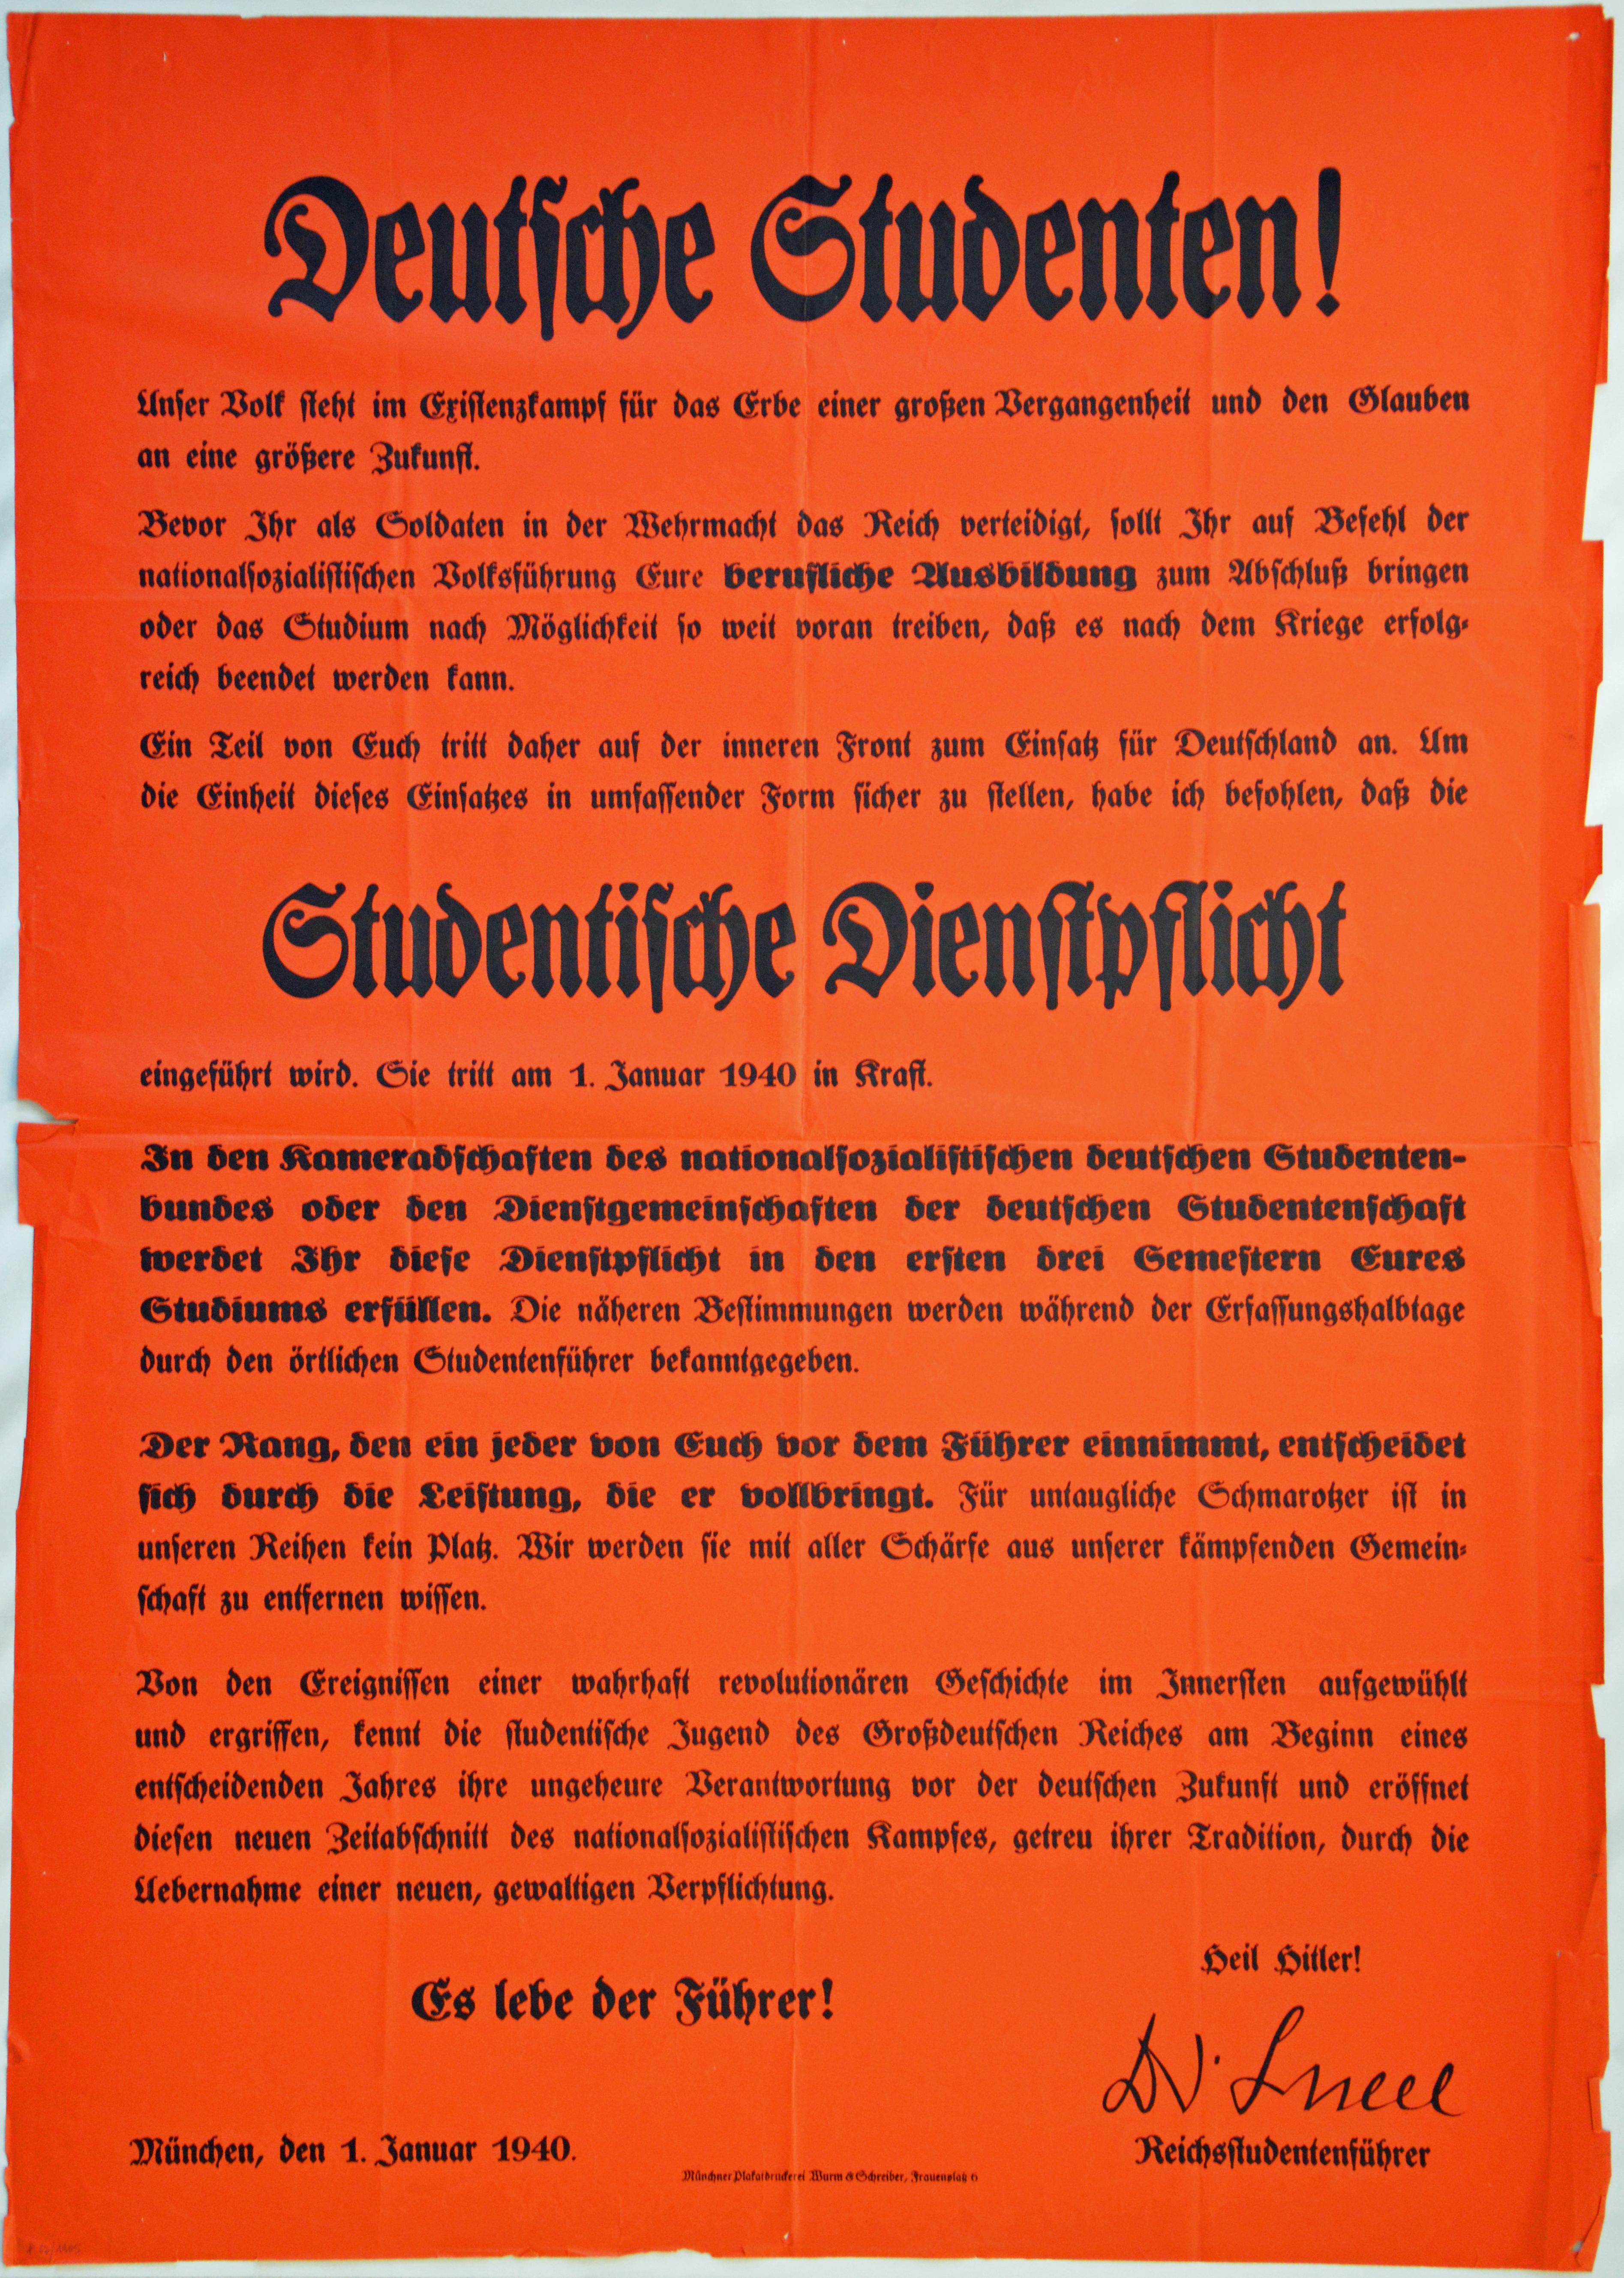 [Plakat mit der Information, dass die "Studentische Dienstpflicht" eingeführt wird, 1940]